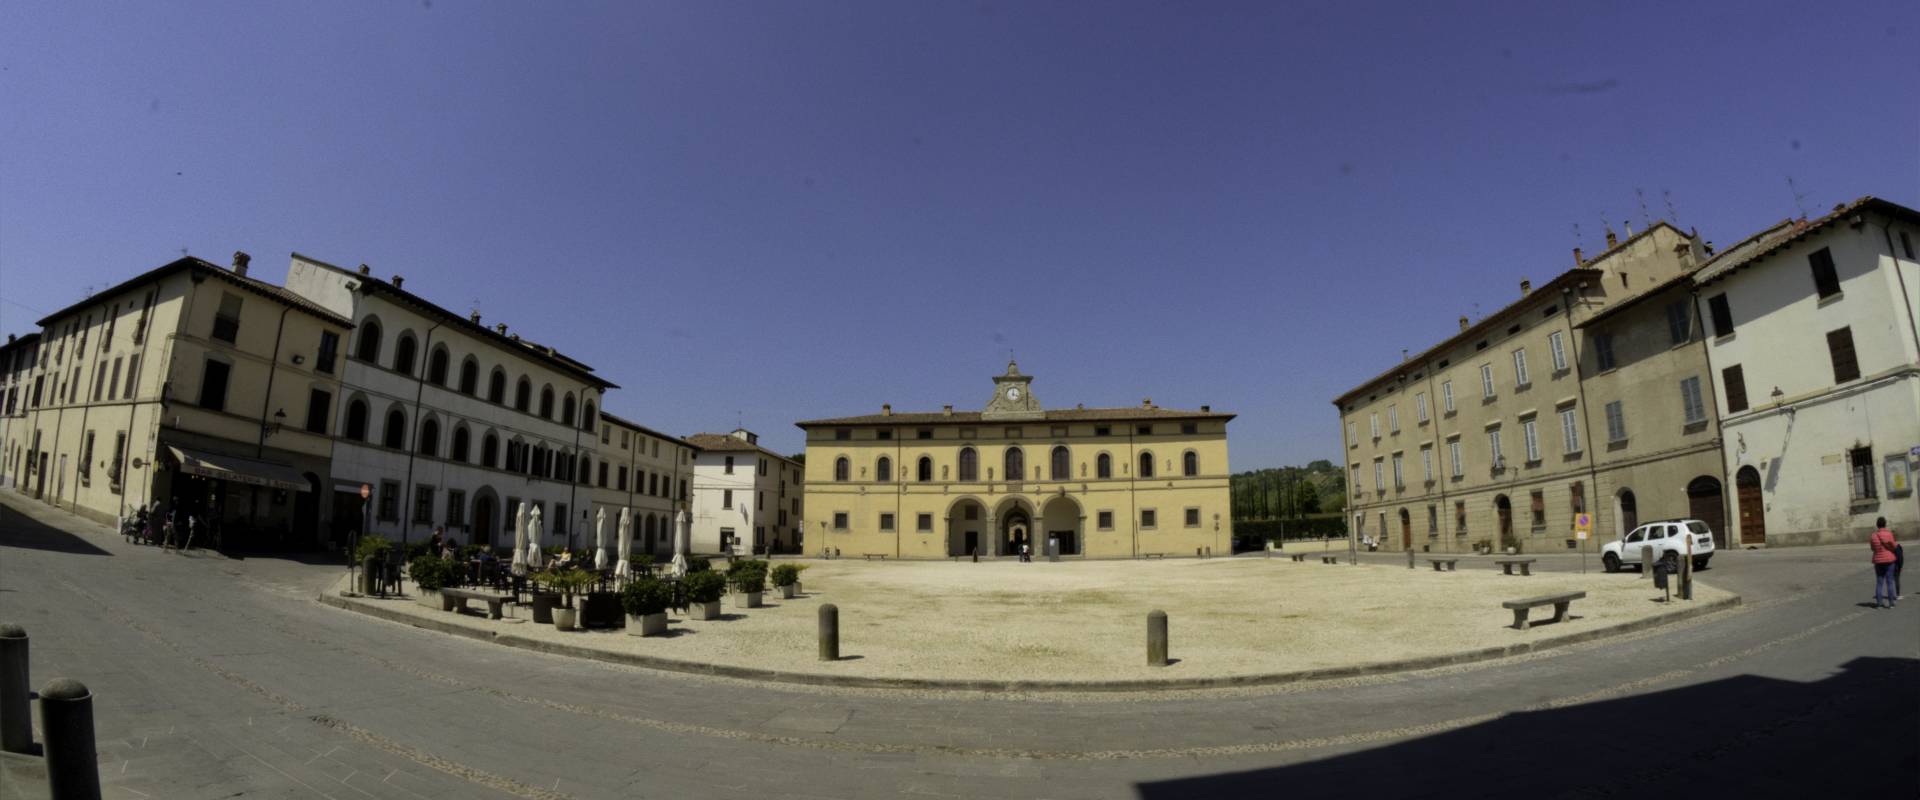 Palazzo Pretorio e Piazza d'armi foto di Stefano Micheli